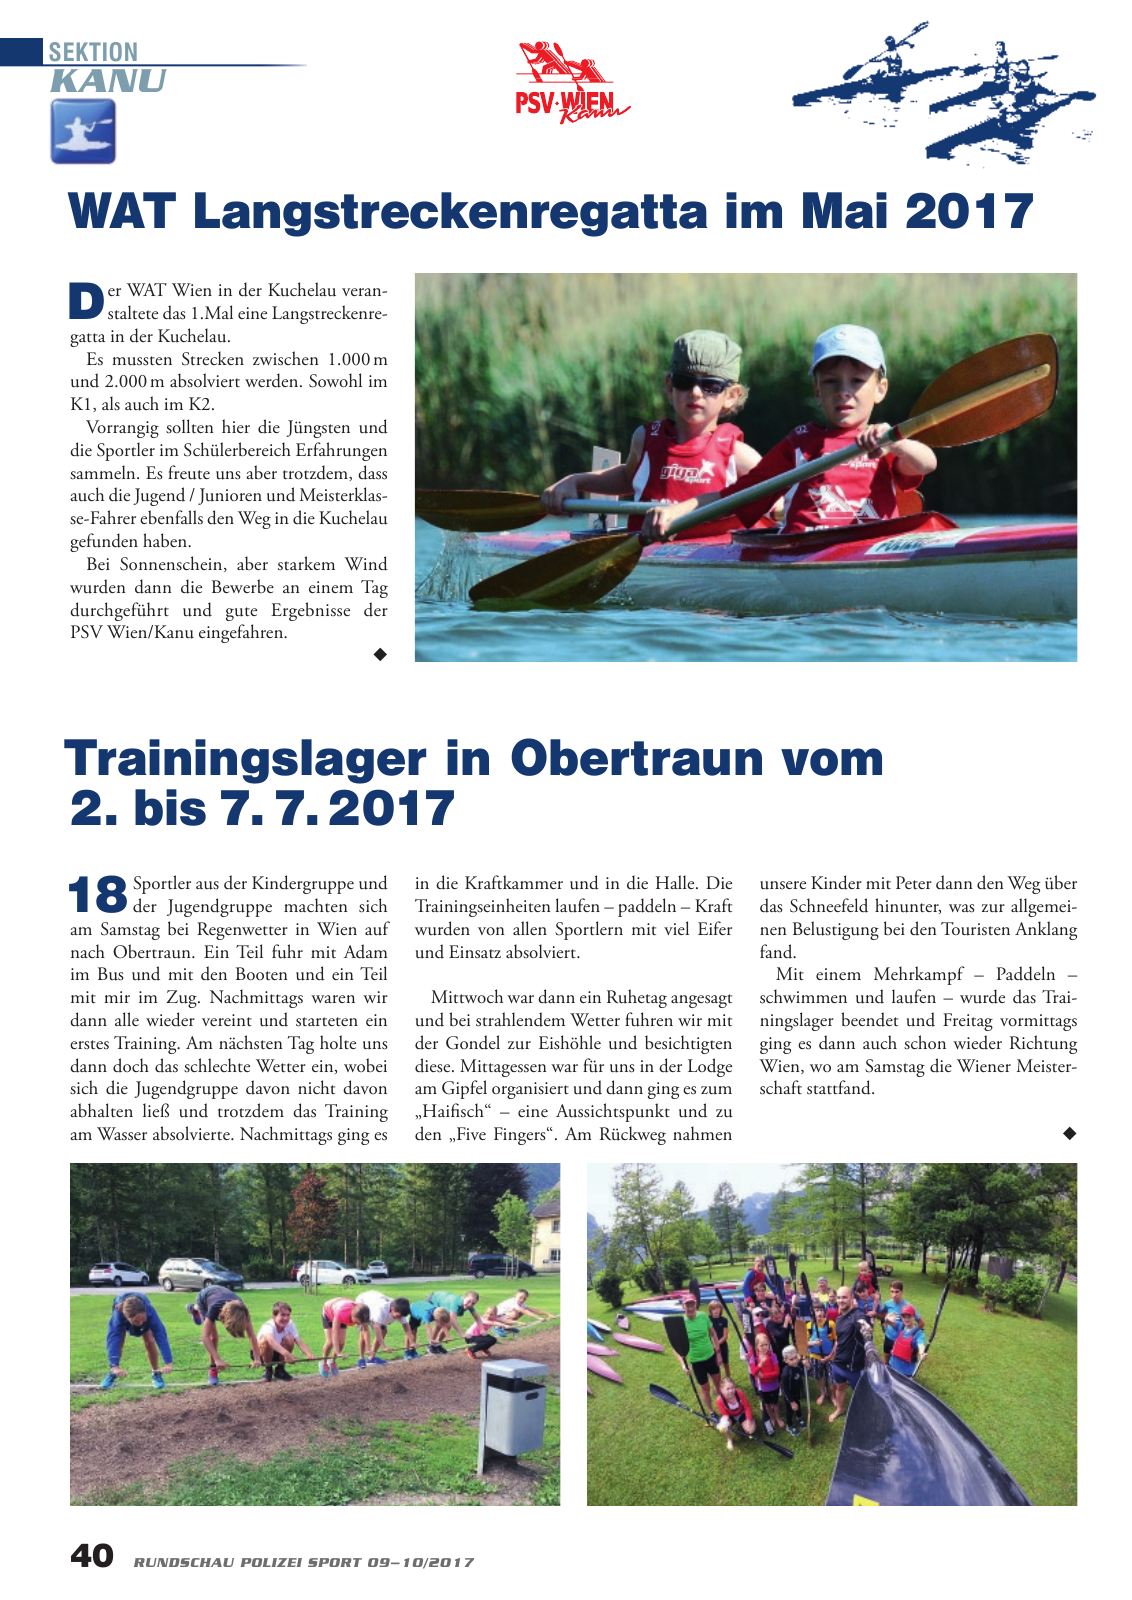 Vorschau Rundschau Polizei Sport 09-10/2017 Seite 40